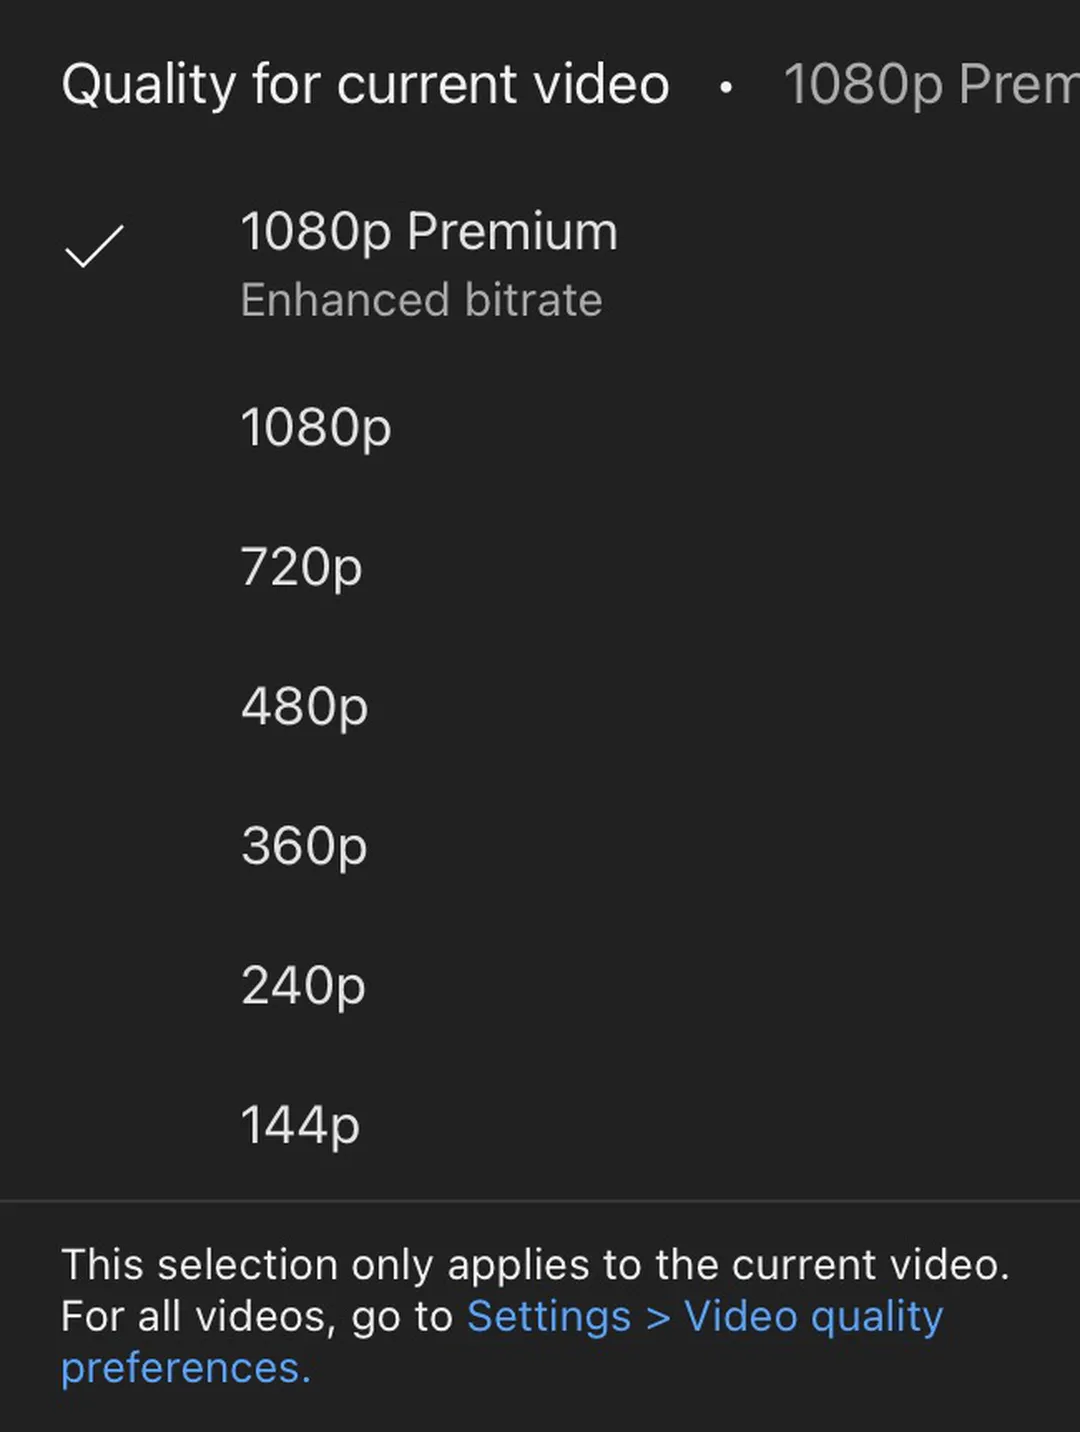 YouTube Premium 1080p